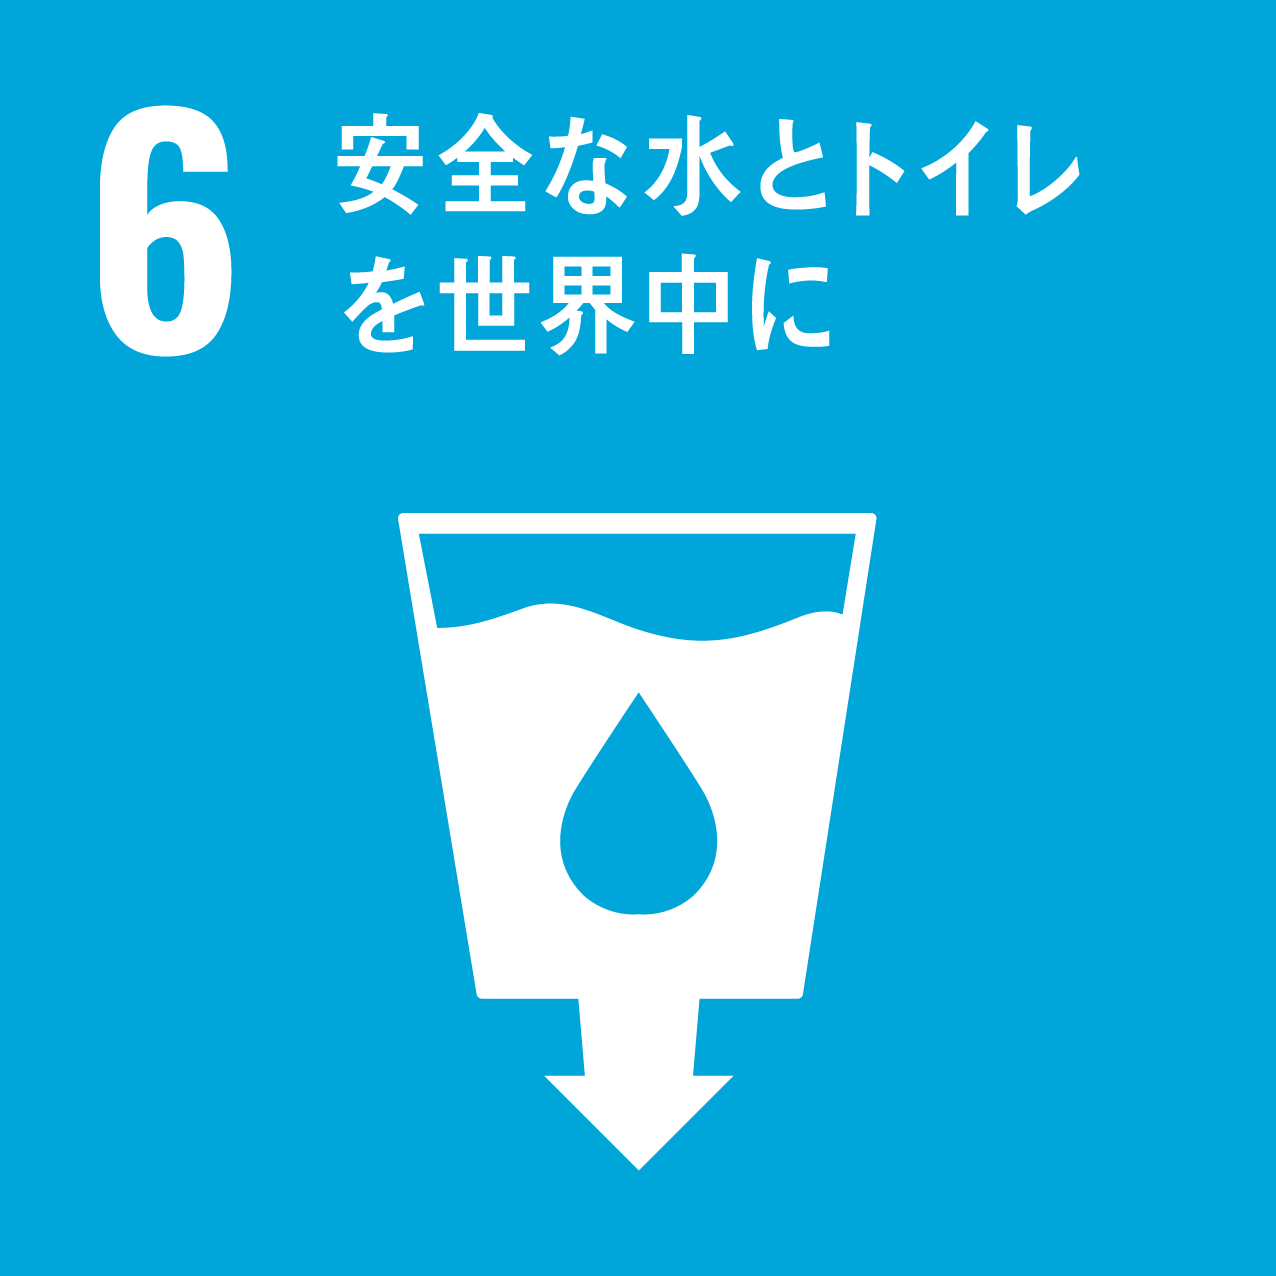 国際目標6.安全な水とトイレを世界中に